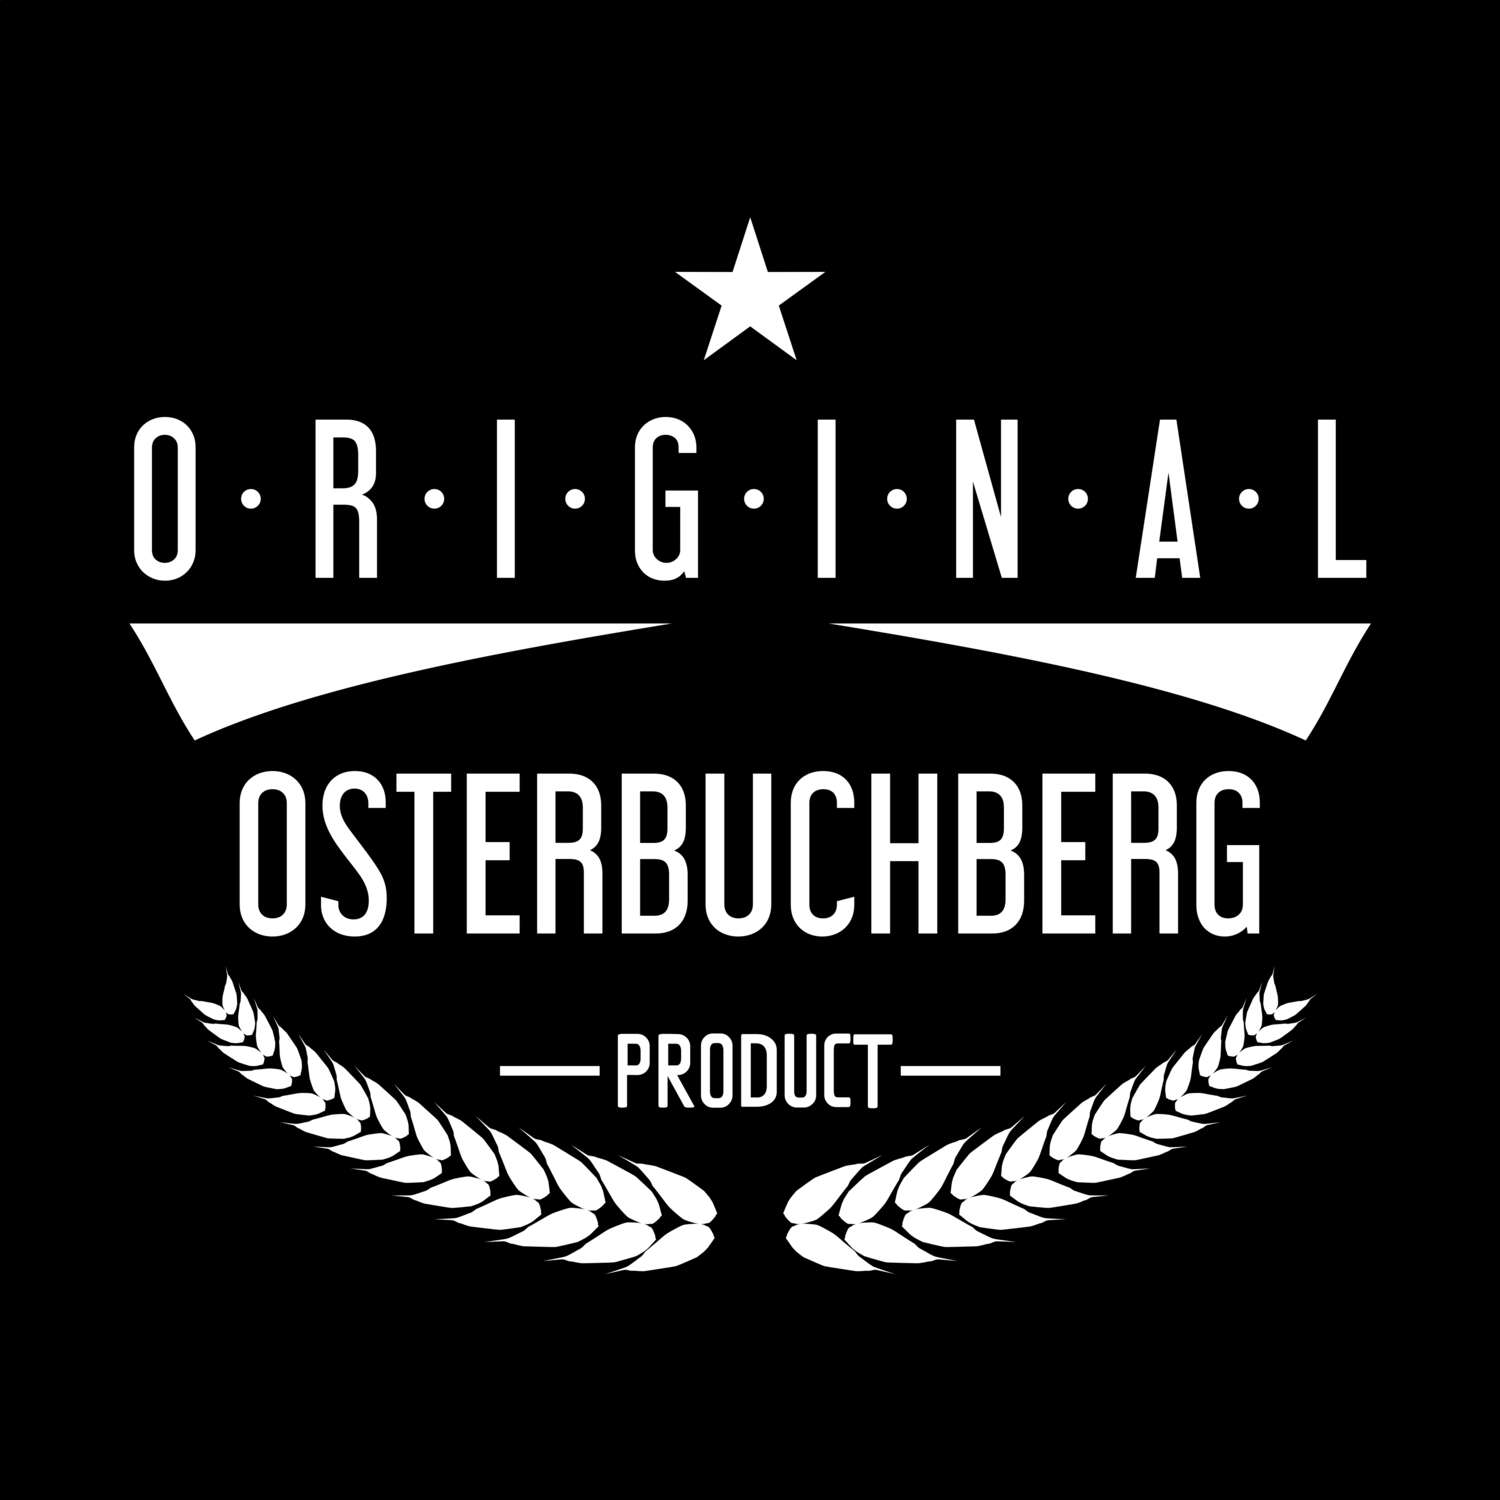 Osterbuchberg T-Shirt »Original Product«